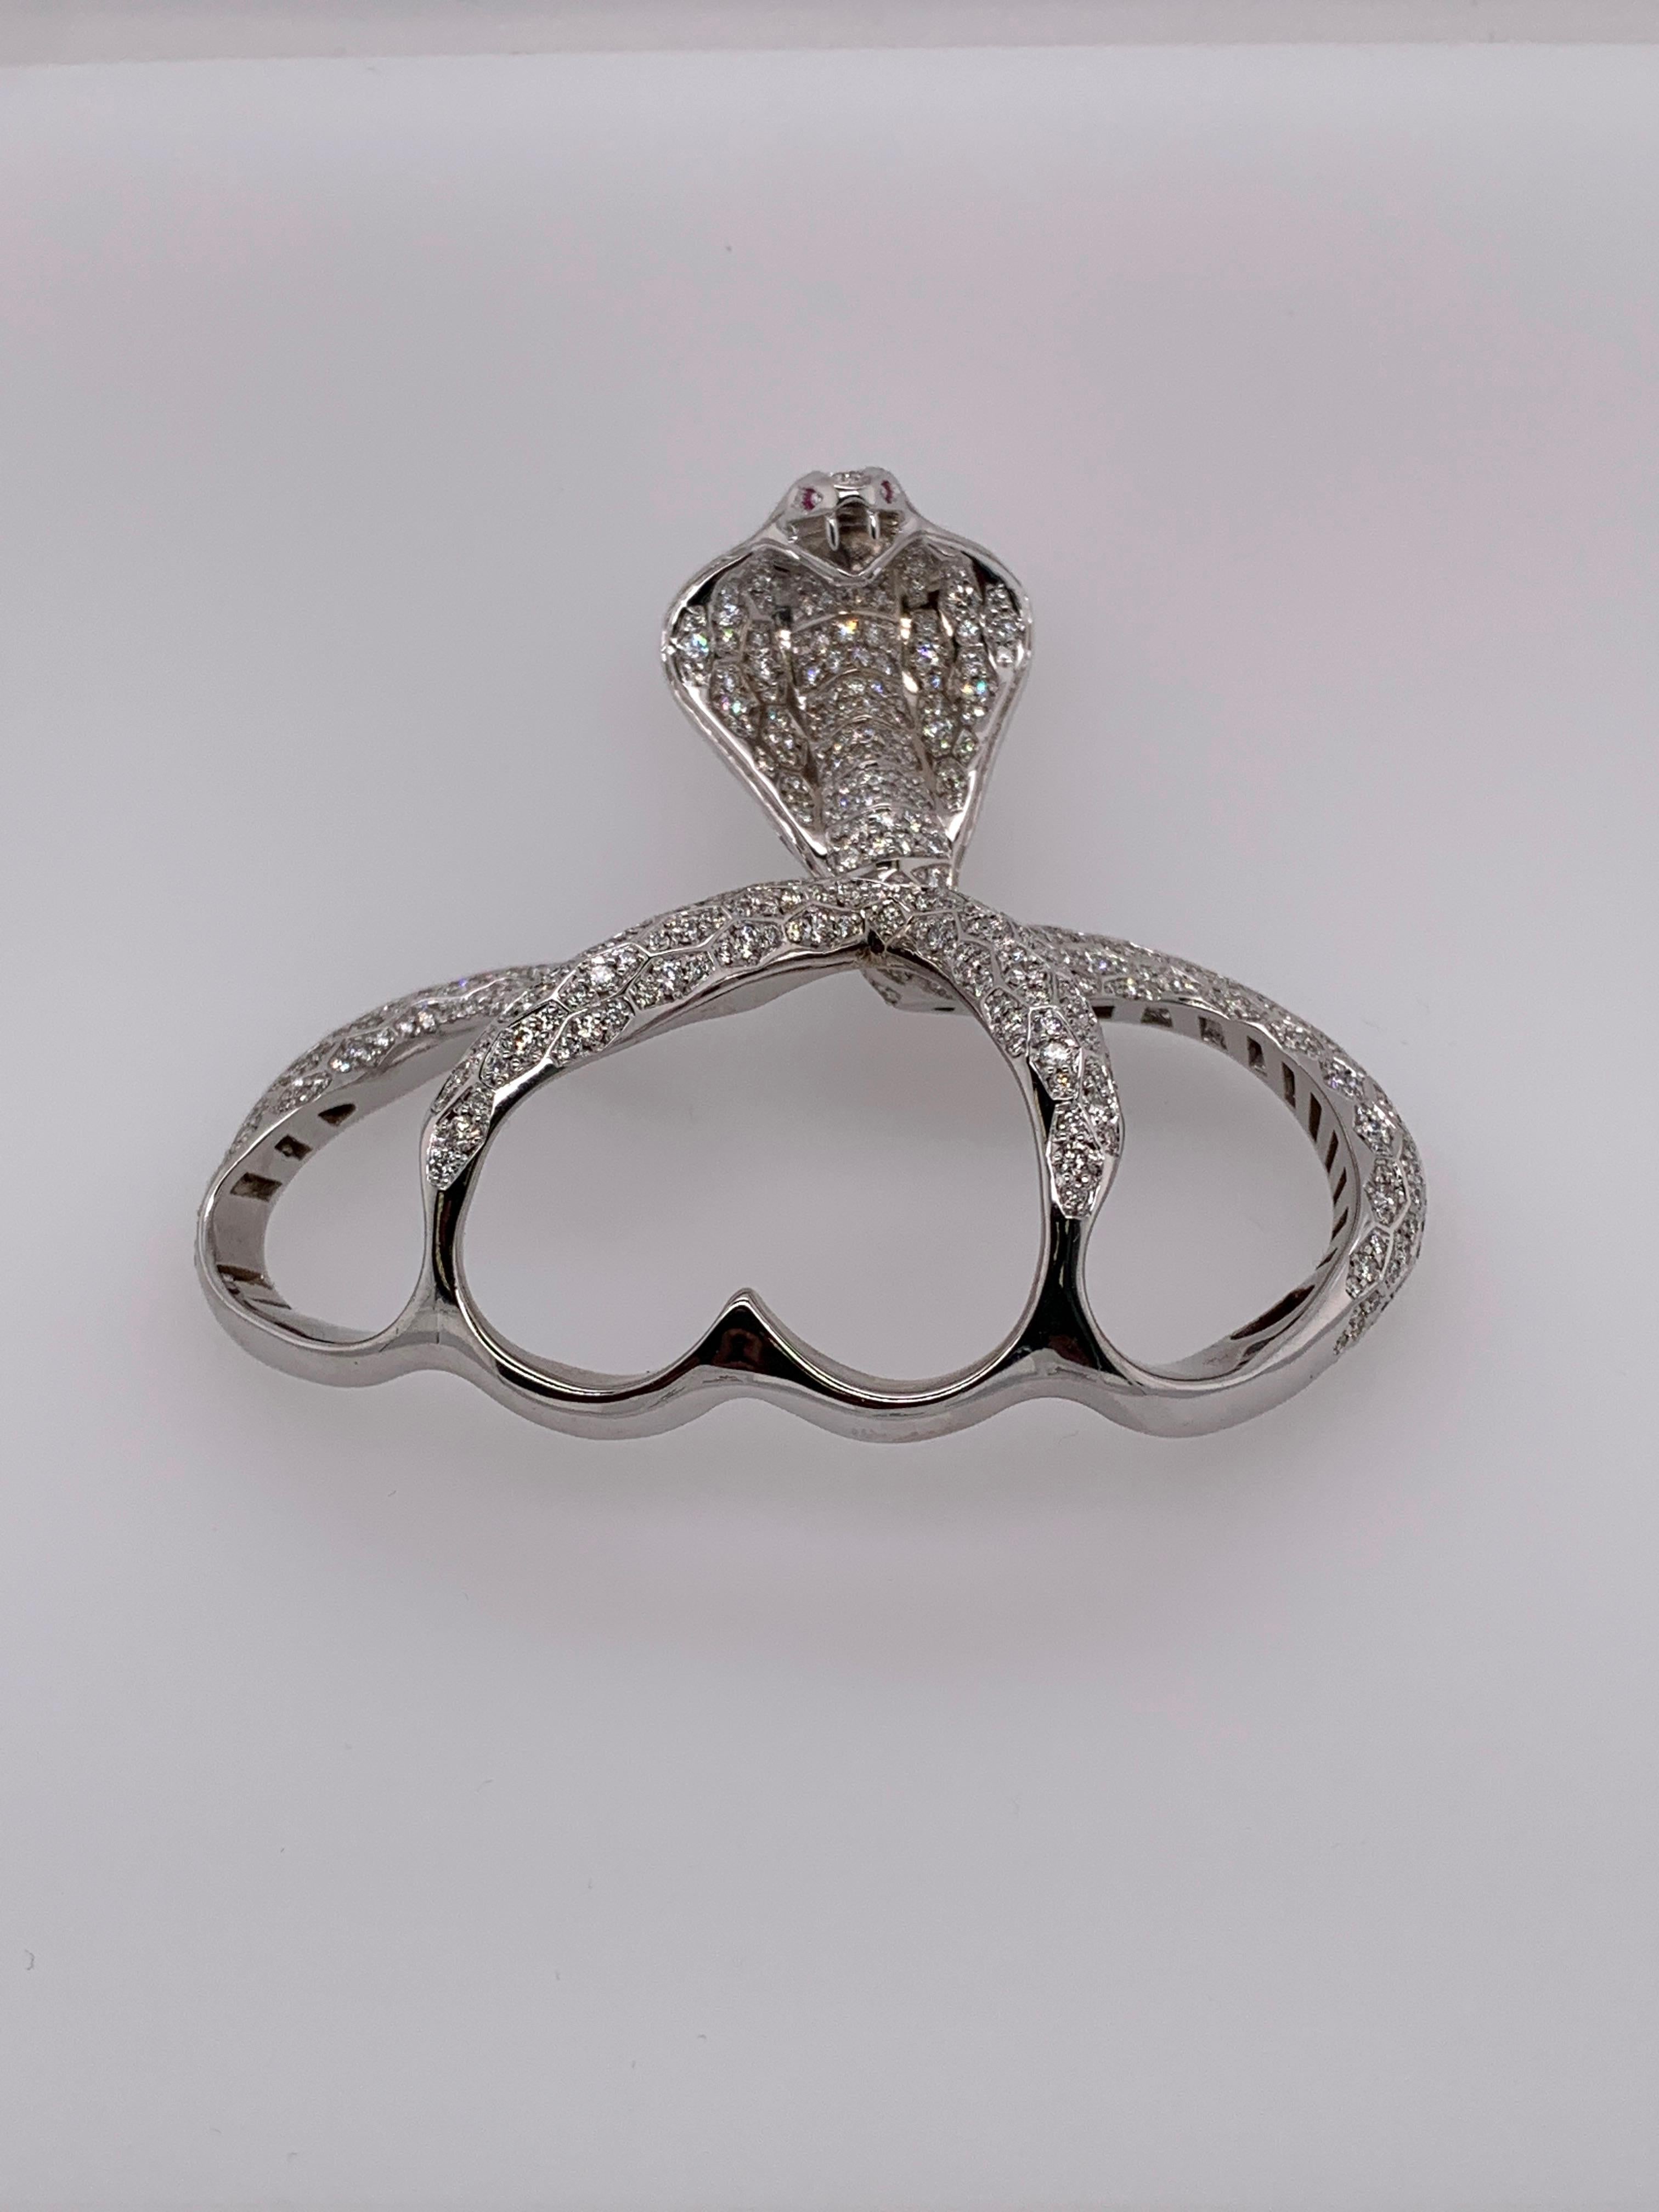 Modern White Gold White Diamond Ring, Cobra Snake Ring For Sale